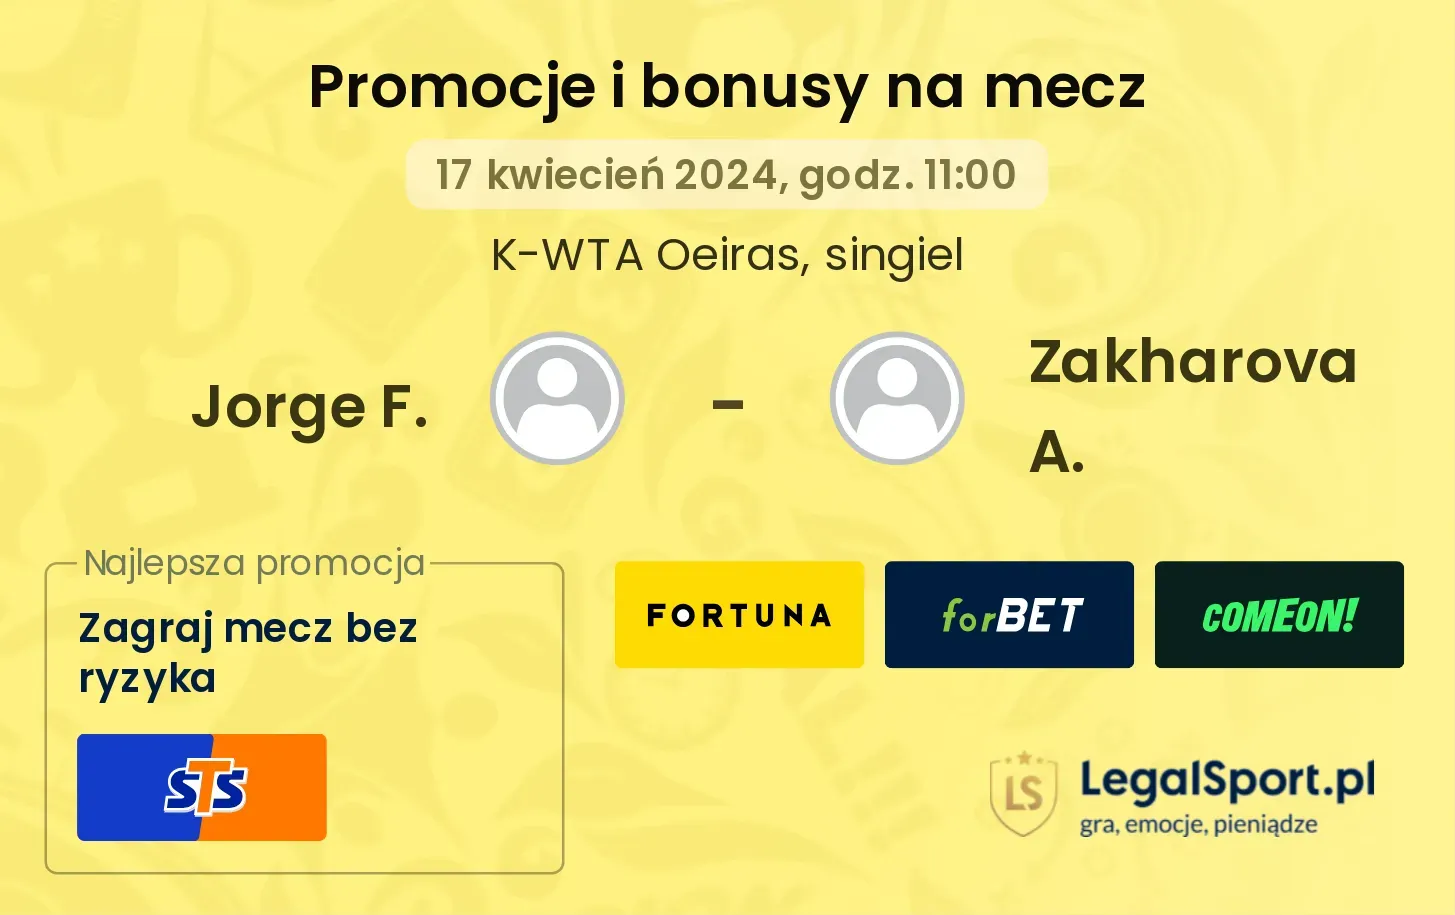 Jorge F. - Zakharova A. promocje bonusy na mecz